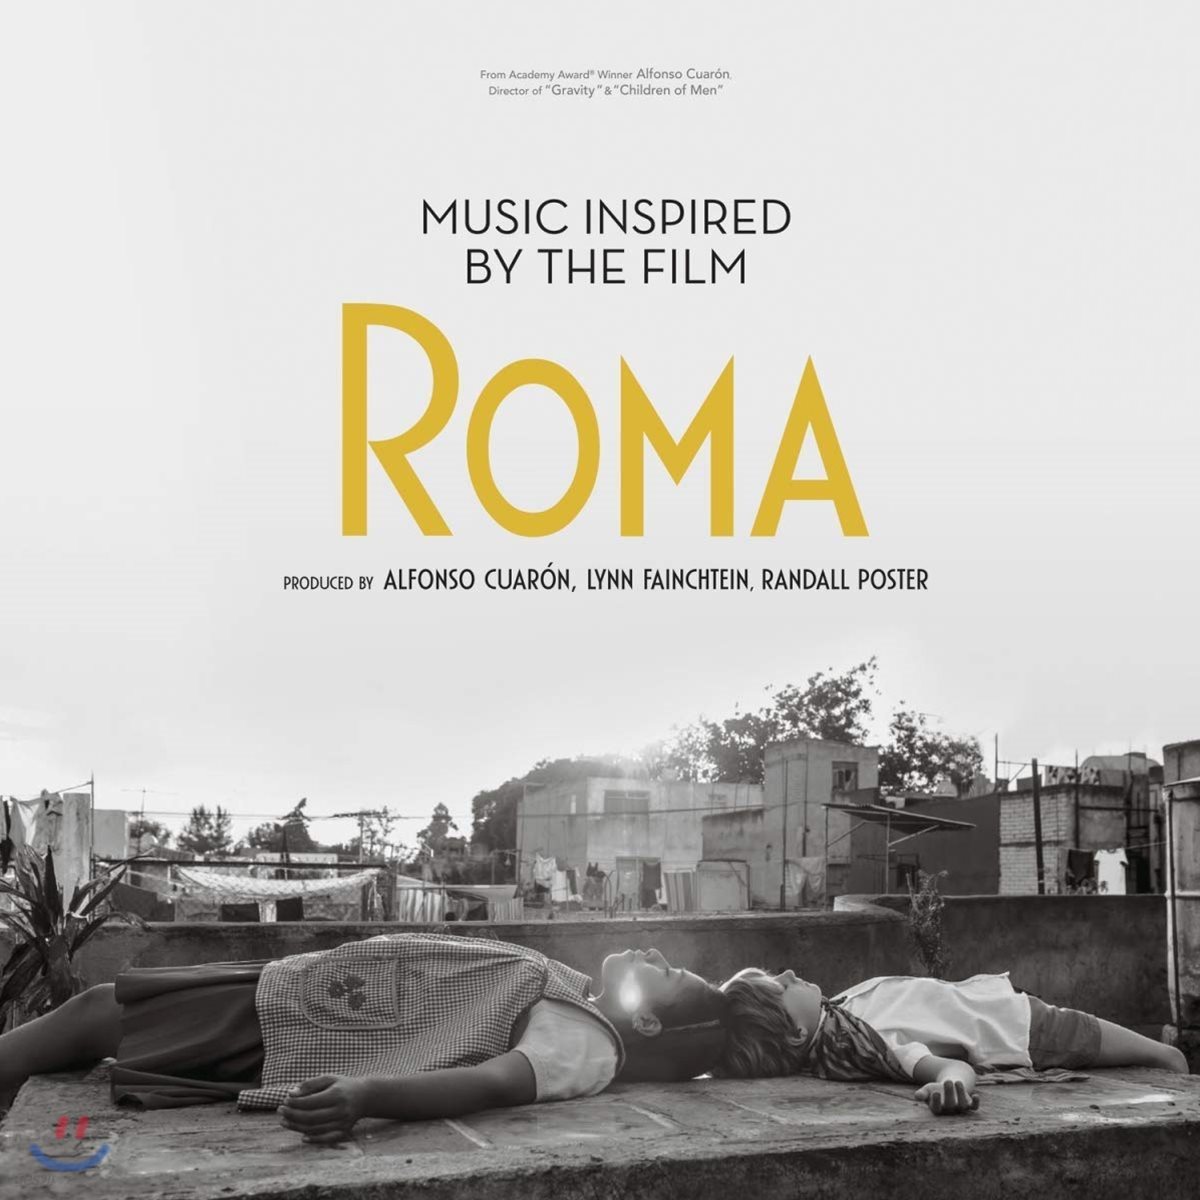 영화 '로마'로부터 영감을 받은 음악들 (Music Inspired by the Film Roma) [2LP]